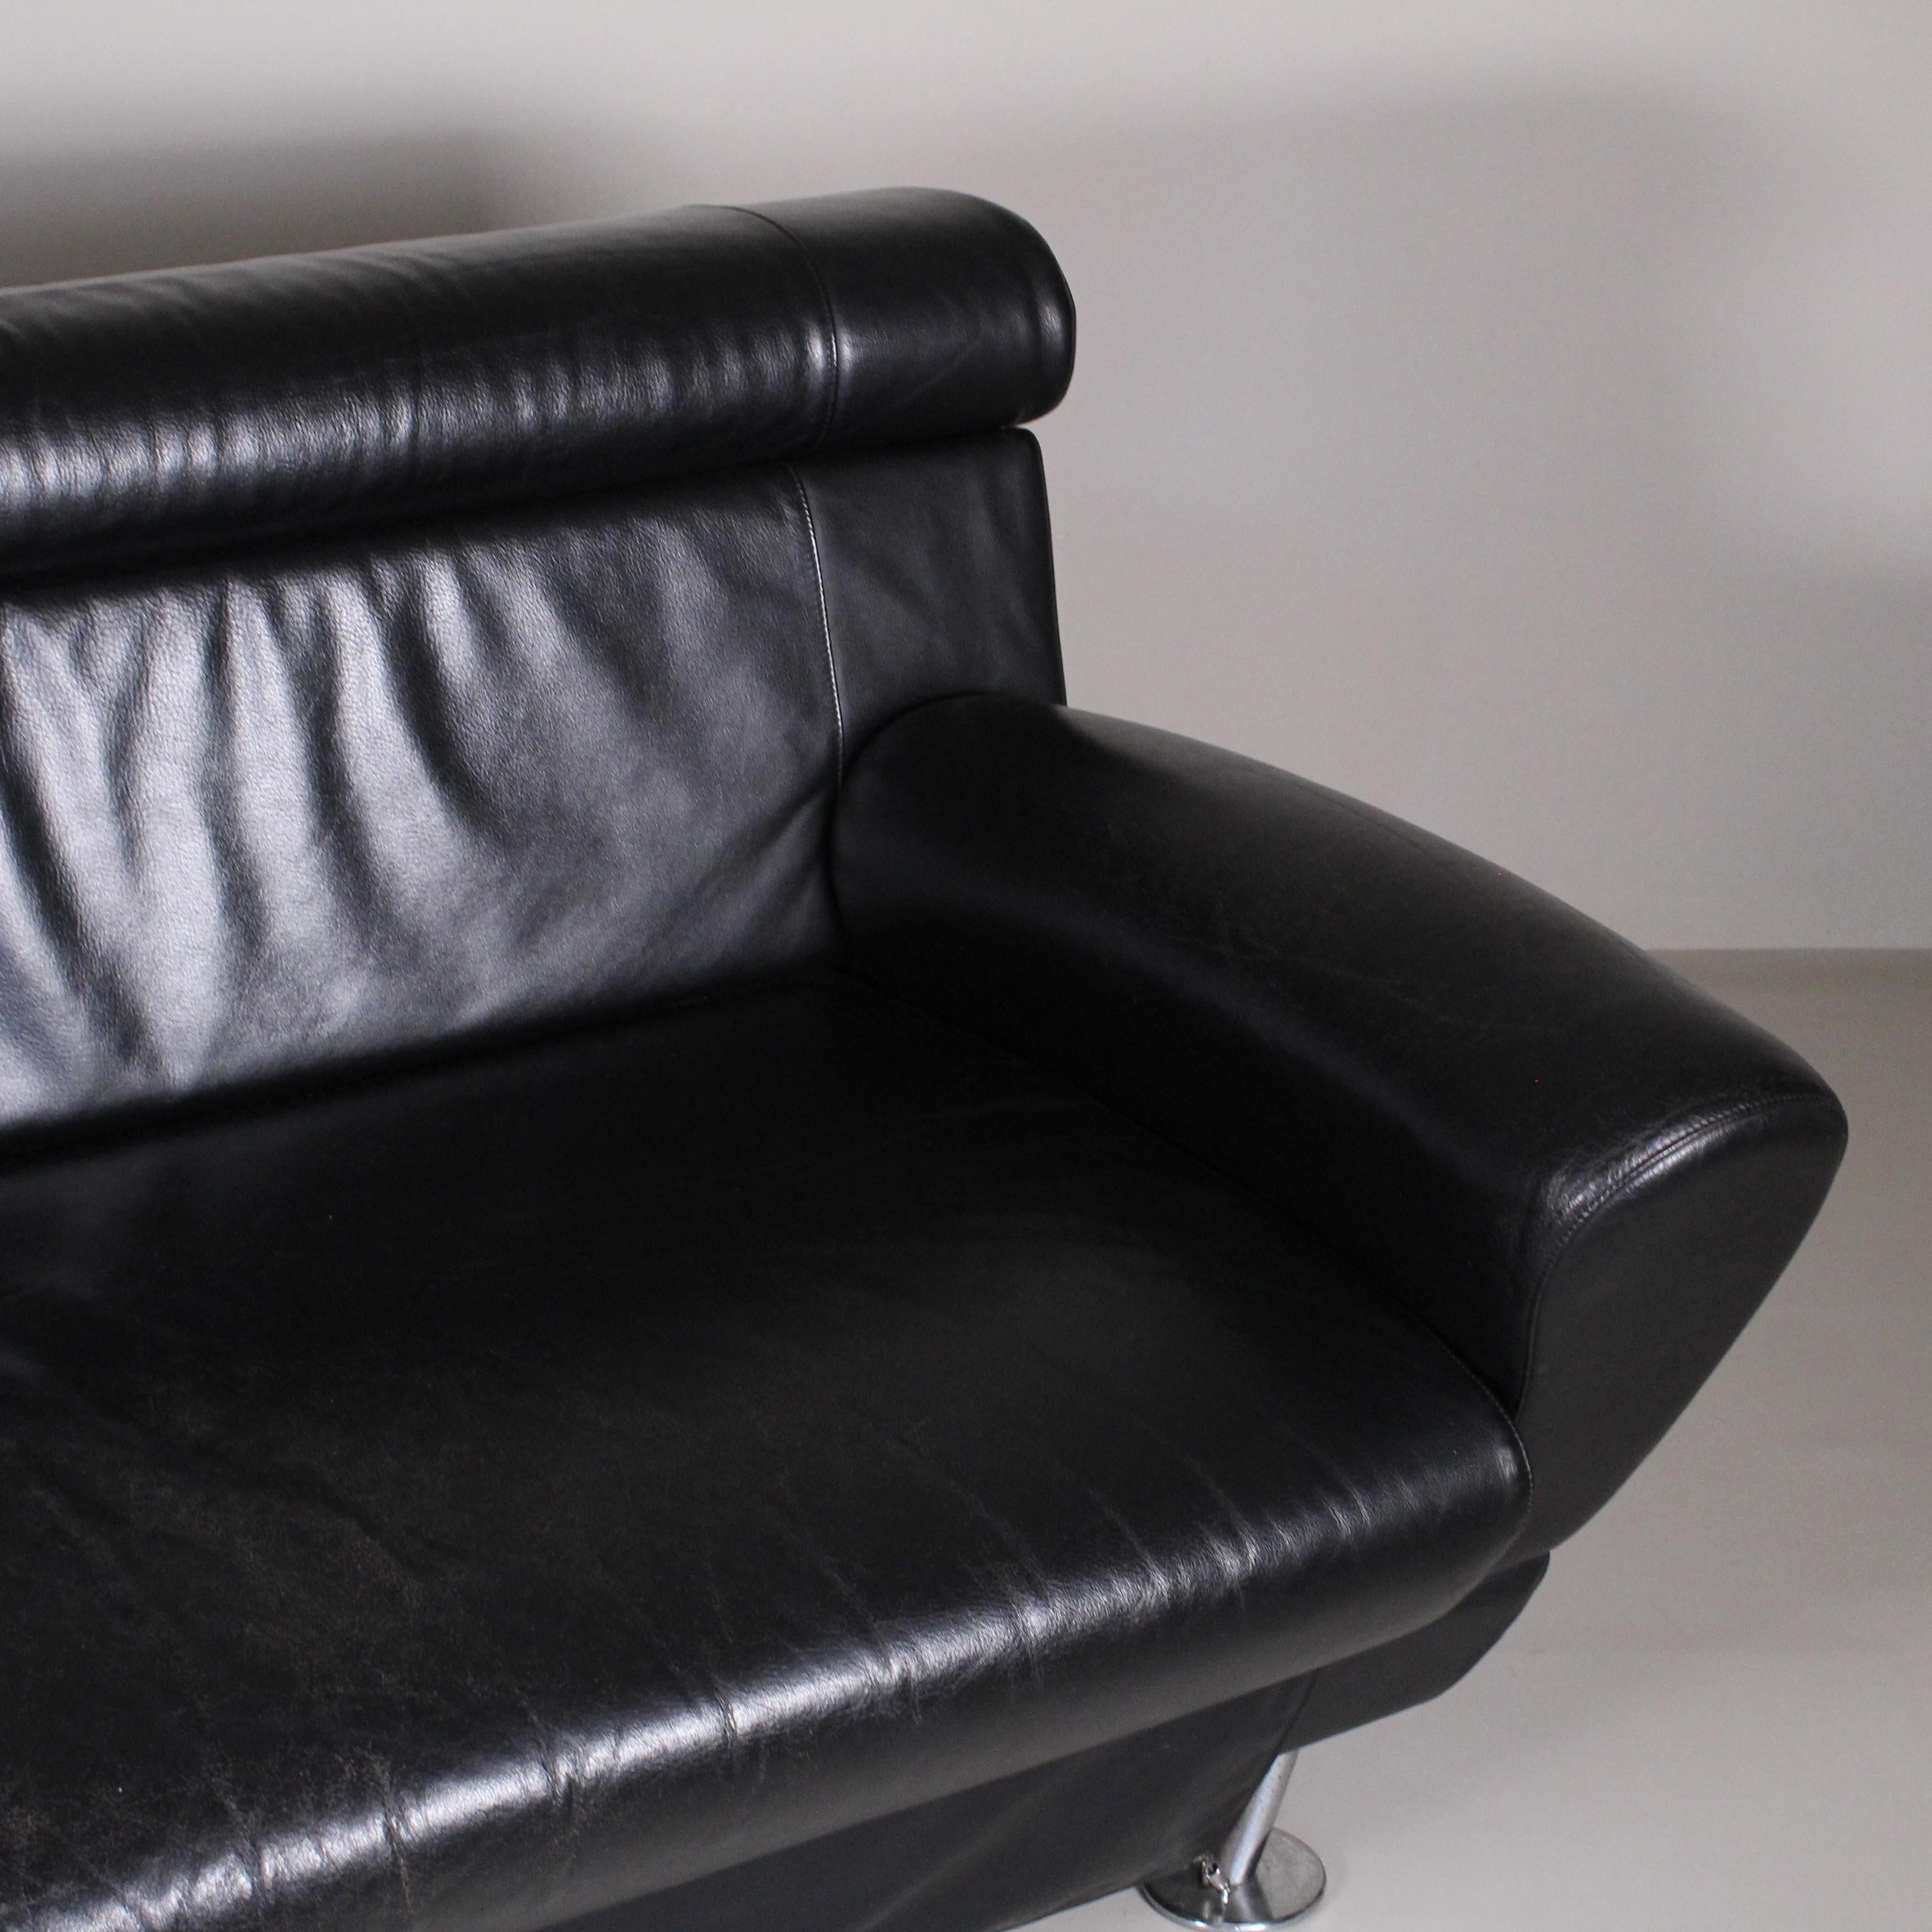 
Balzo Loveseat black sofa, Massimo Iosa Ghini, Moroso, 1987
Le canapé Balzo Loveseat est une création emblématique du designer italien Massimo Iosa Ghini pour la société italienne Moroso, présentée en 1987. Ce canapé est un exemple emblématique du